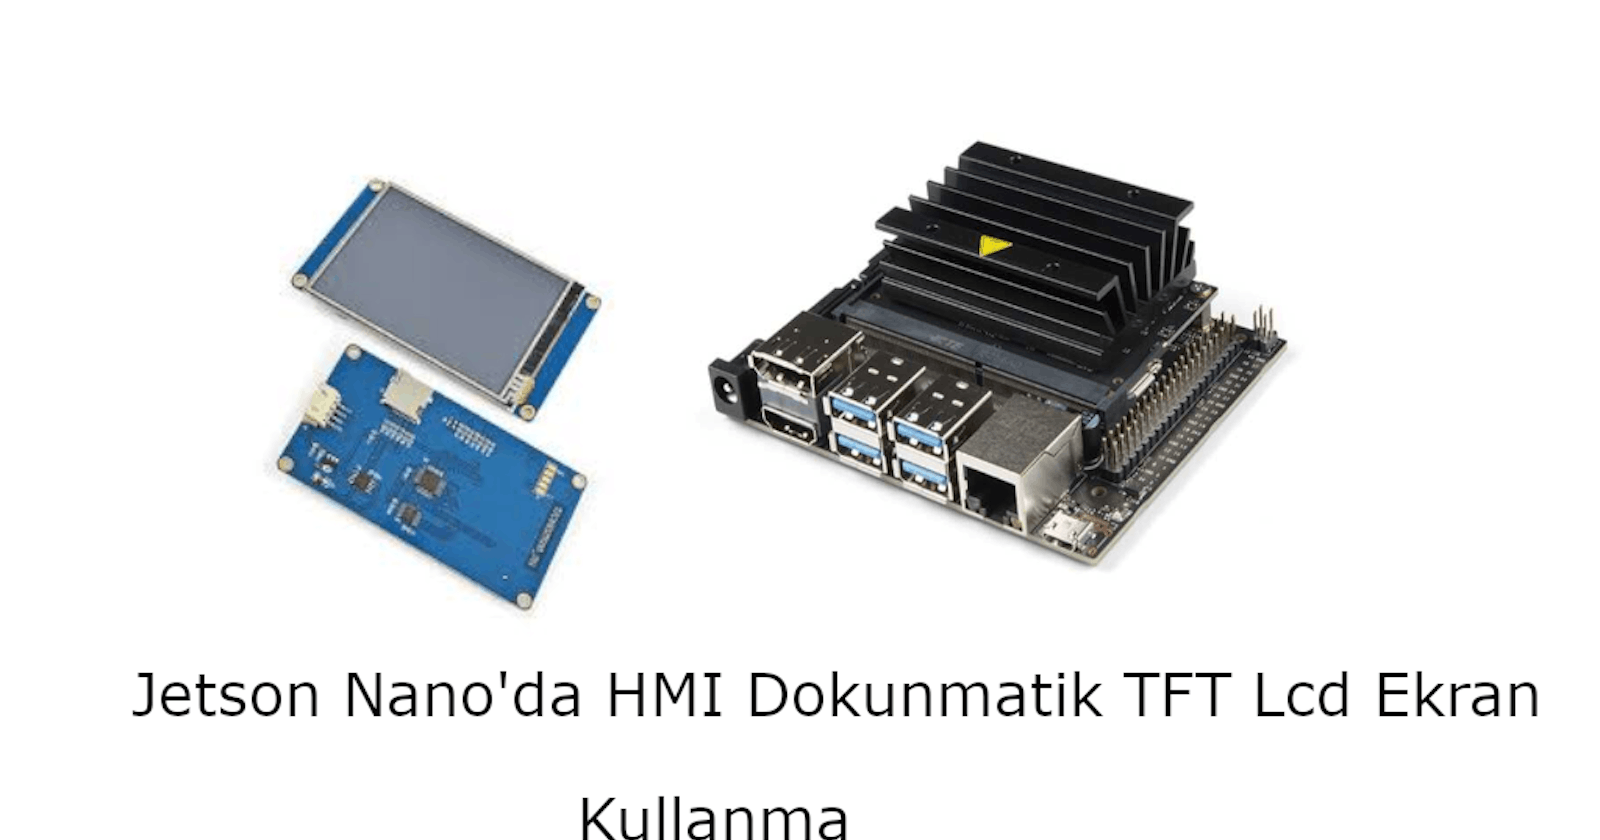 Jetson Nano'da HMI Dokunmatik TFT Lcd Ekran Kullanma
(Using HMI Touch TFT LCD Display on Jetson Nano)